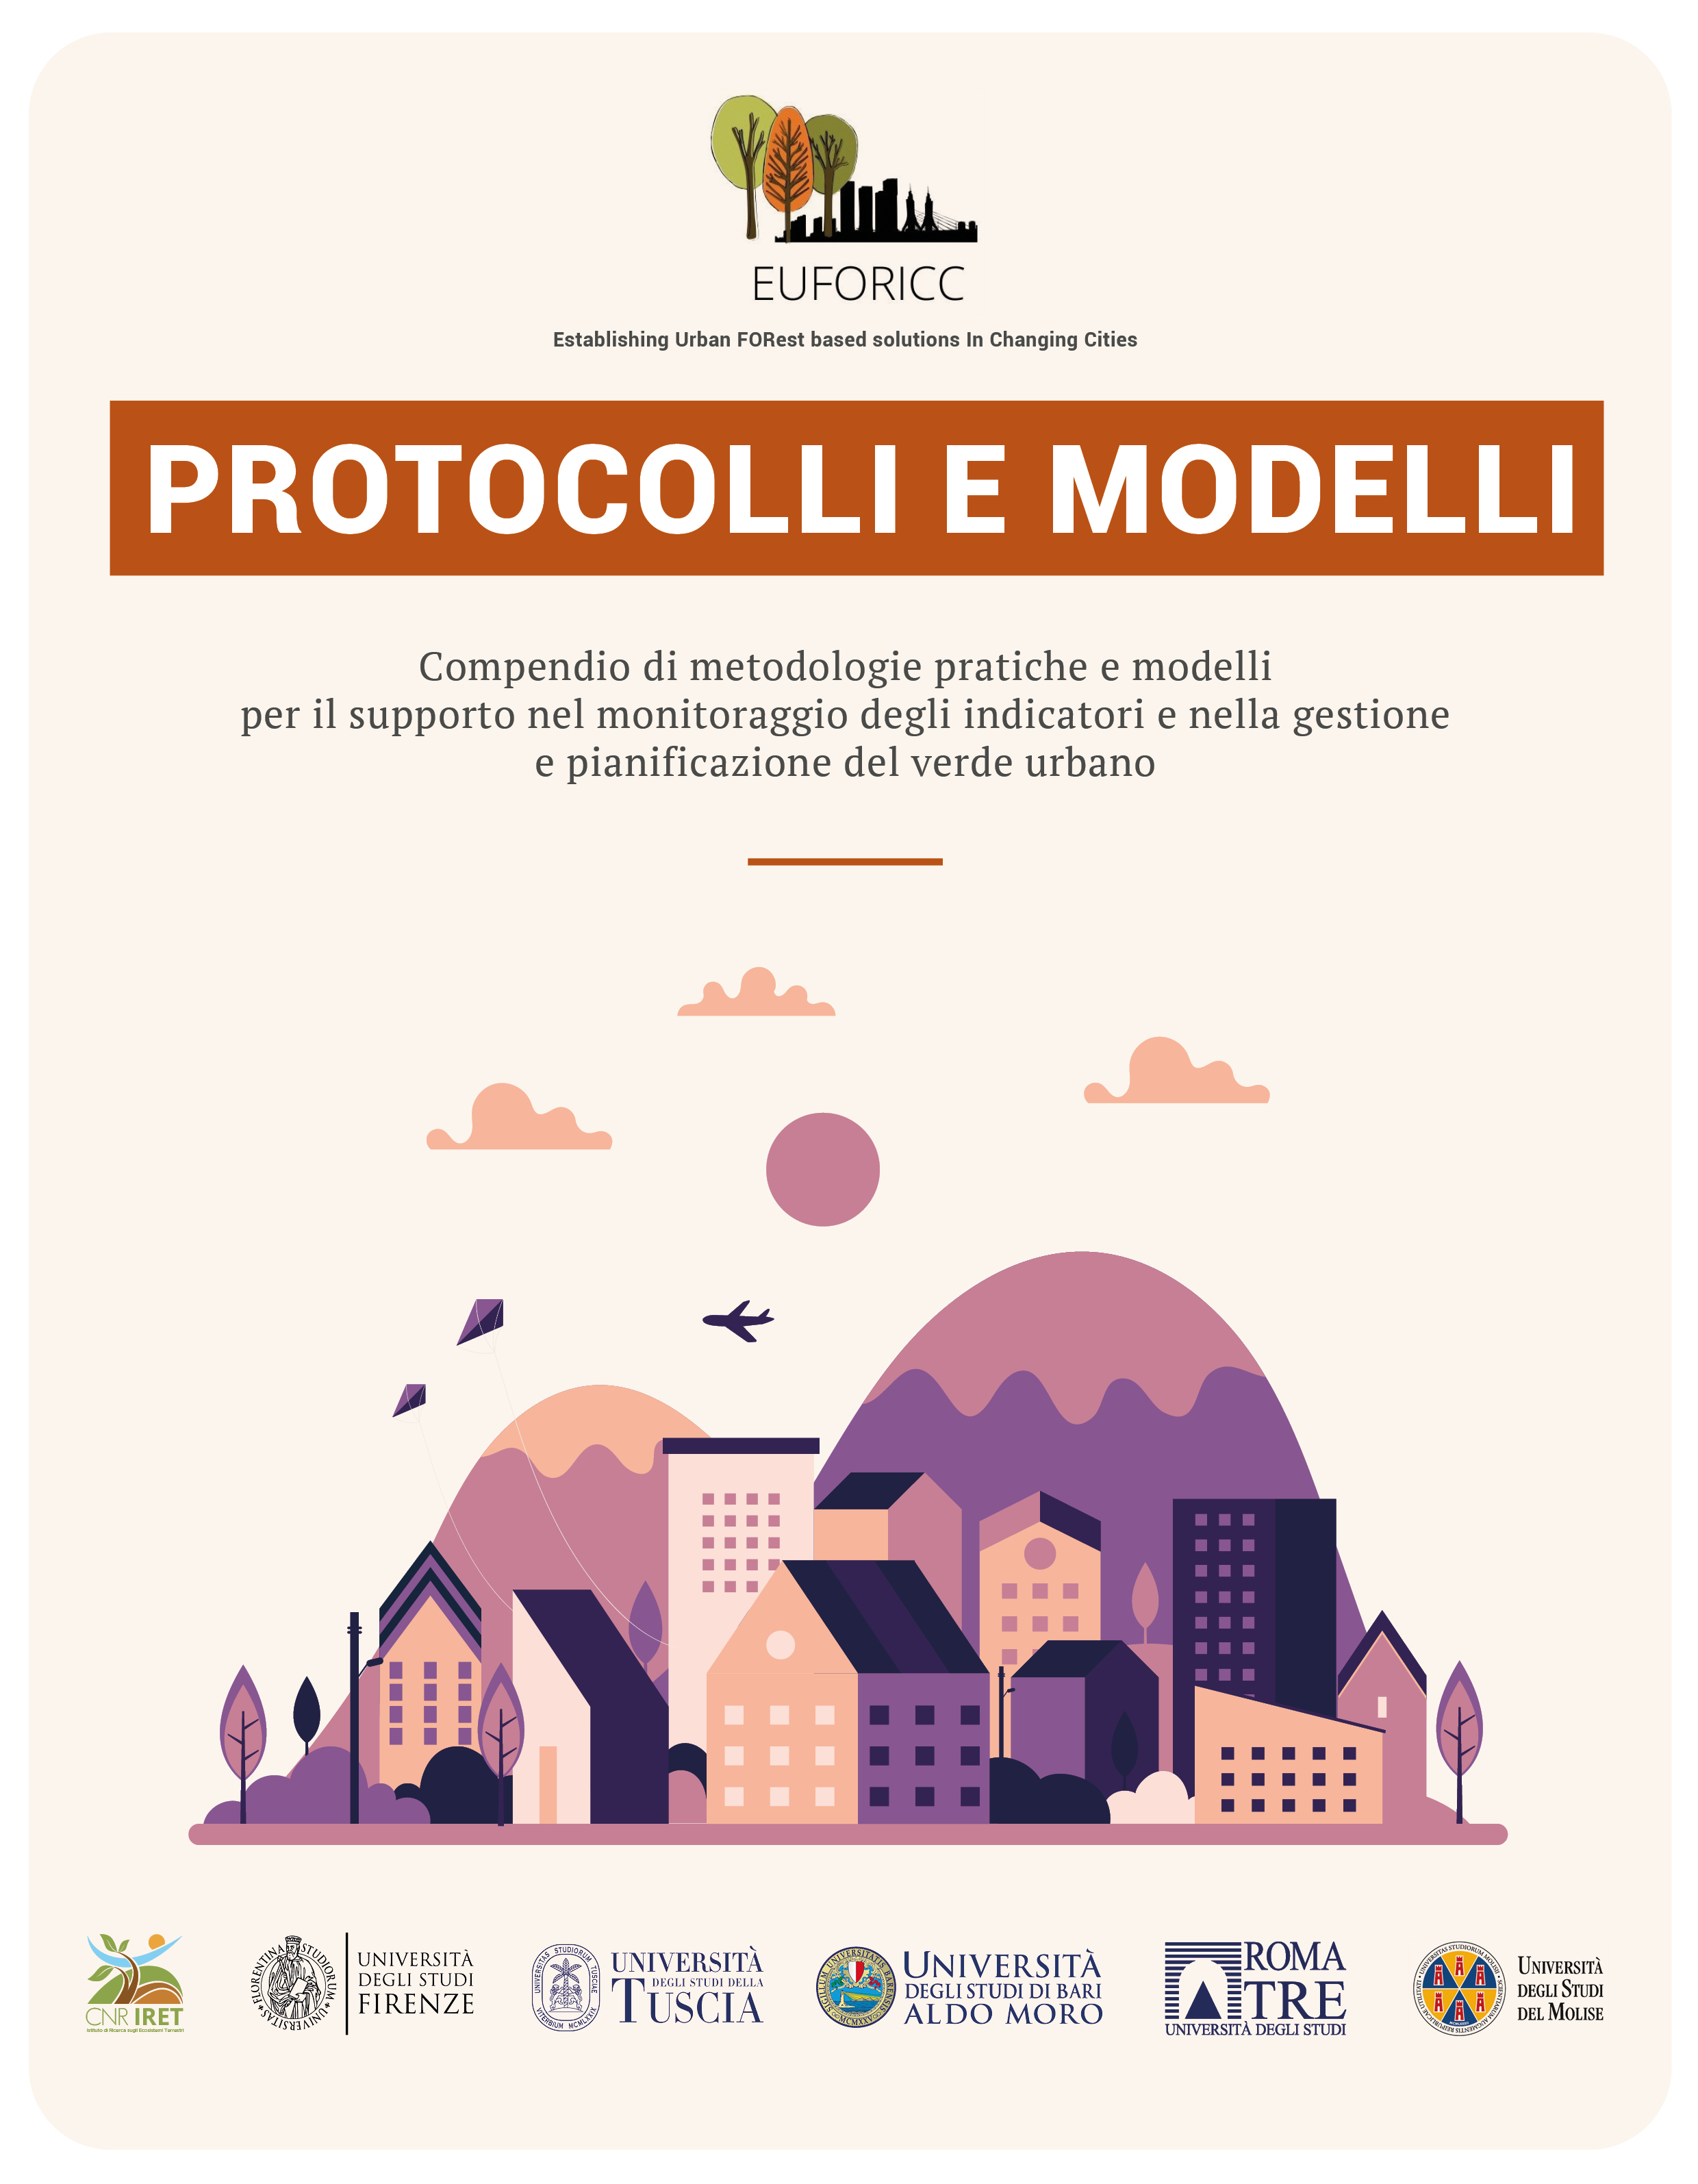 Protocolli e modelli per il supporto nel monitoraggio degli indicatori e nella gestione e pianificazione del verde urbano